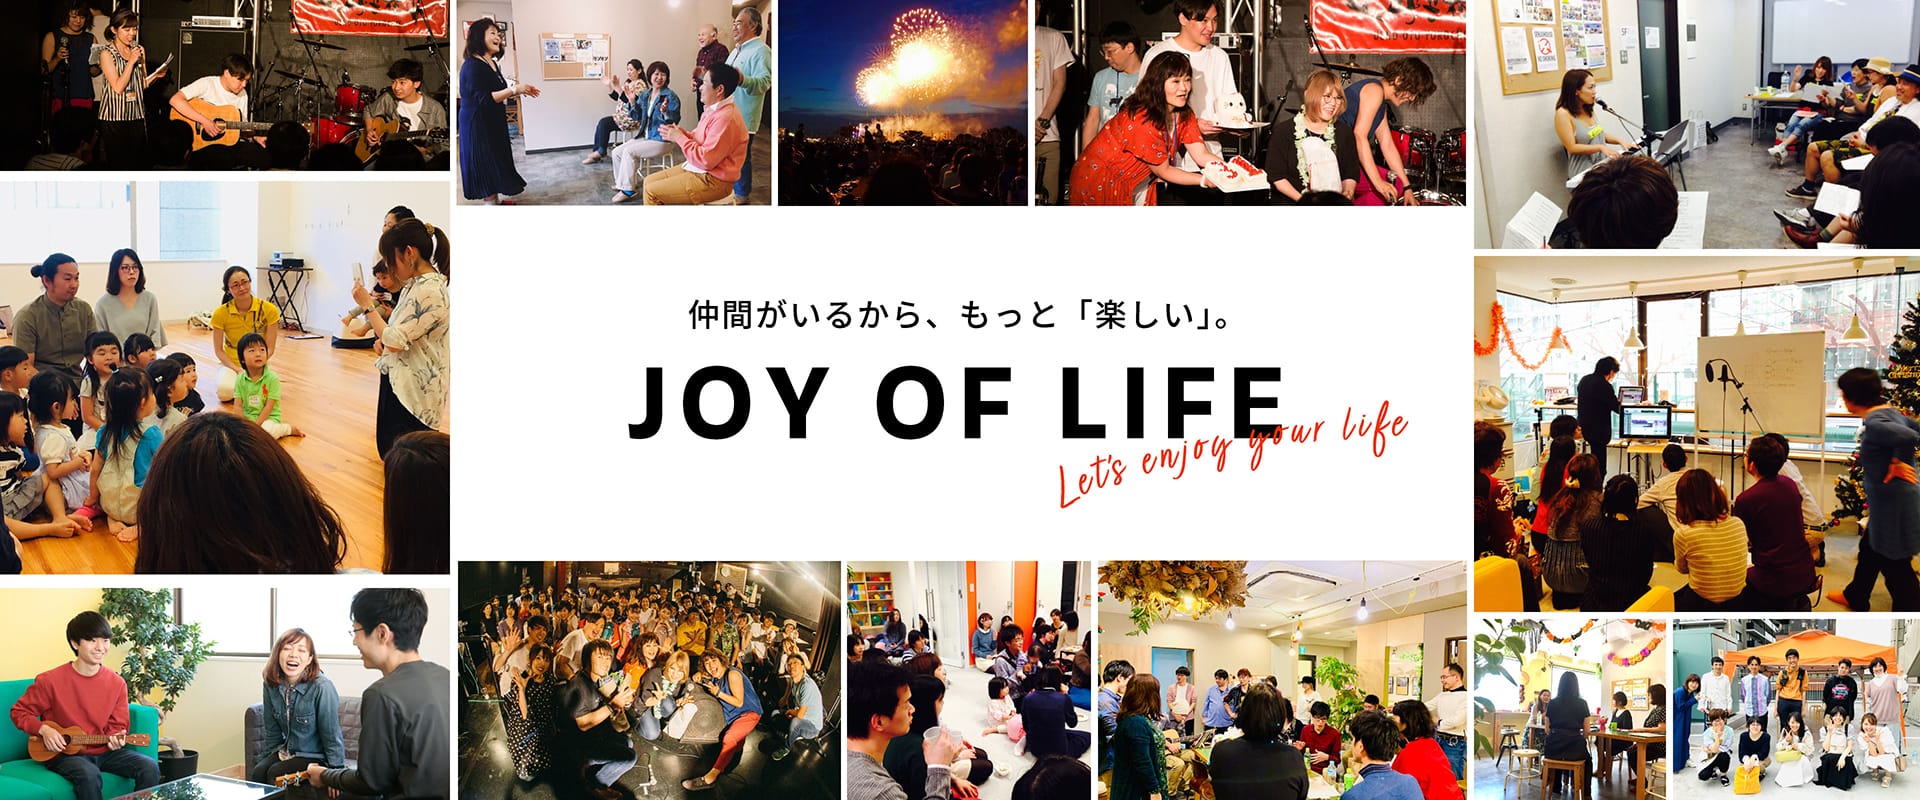 仲間がいるから、もっと「楽しい」。JOY OF LIFE ~Let’s enjoy your life~